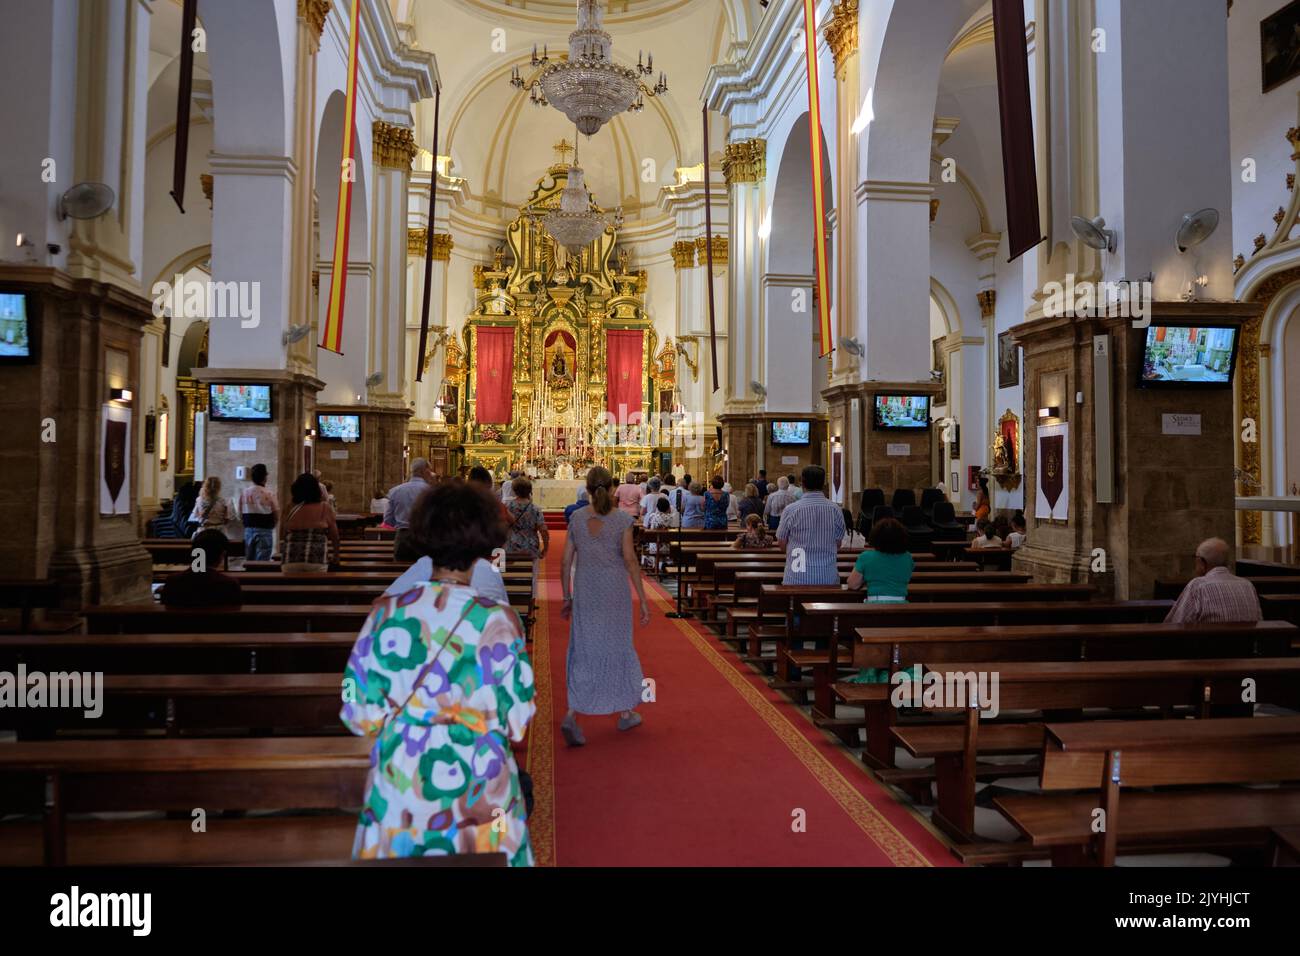 Church Nuestra Señora de la Encarnación. Marbella, Costa del Sol, Malaga Province, Andalusia, Spain Stock Photo